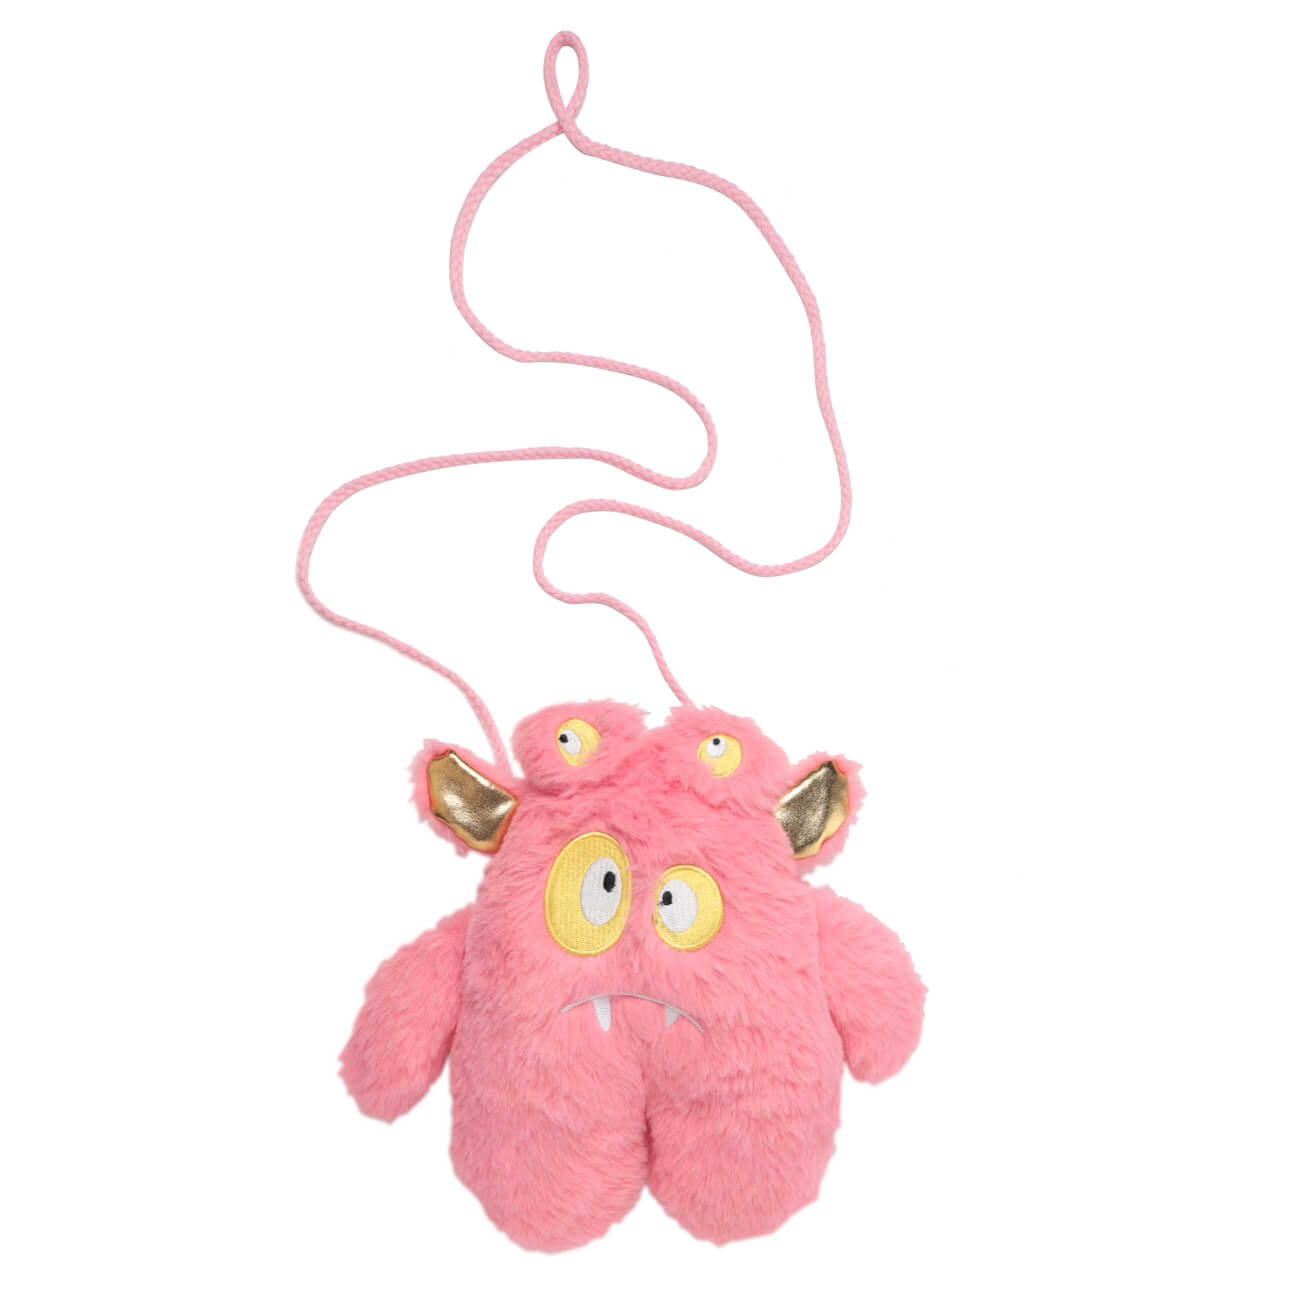 Сумка-игрушка, 25х23 см, искусственный мех, розовая, Монстрик с ушами, Childhood изображение № 1